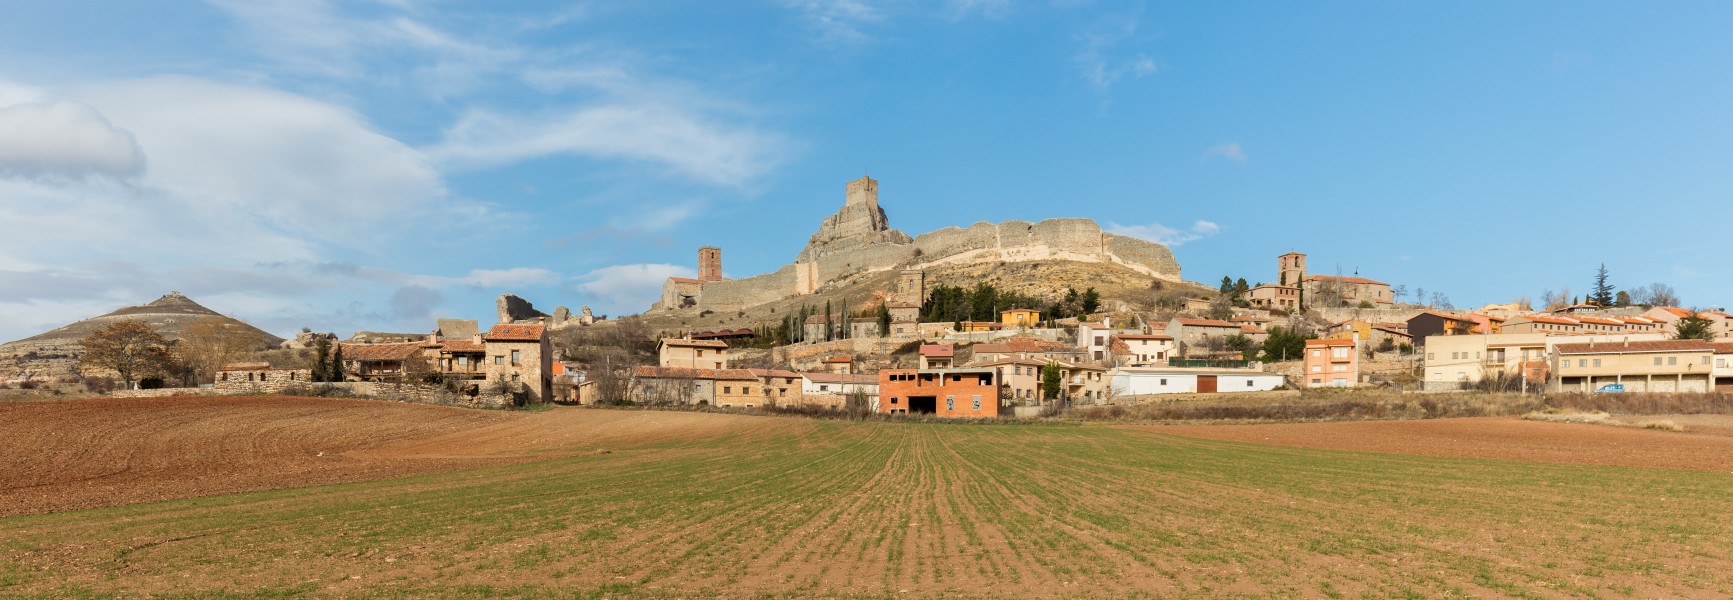 Vista de Atienza, España, 2015-12-28, DD 148